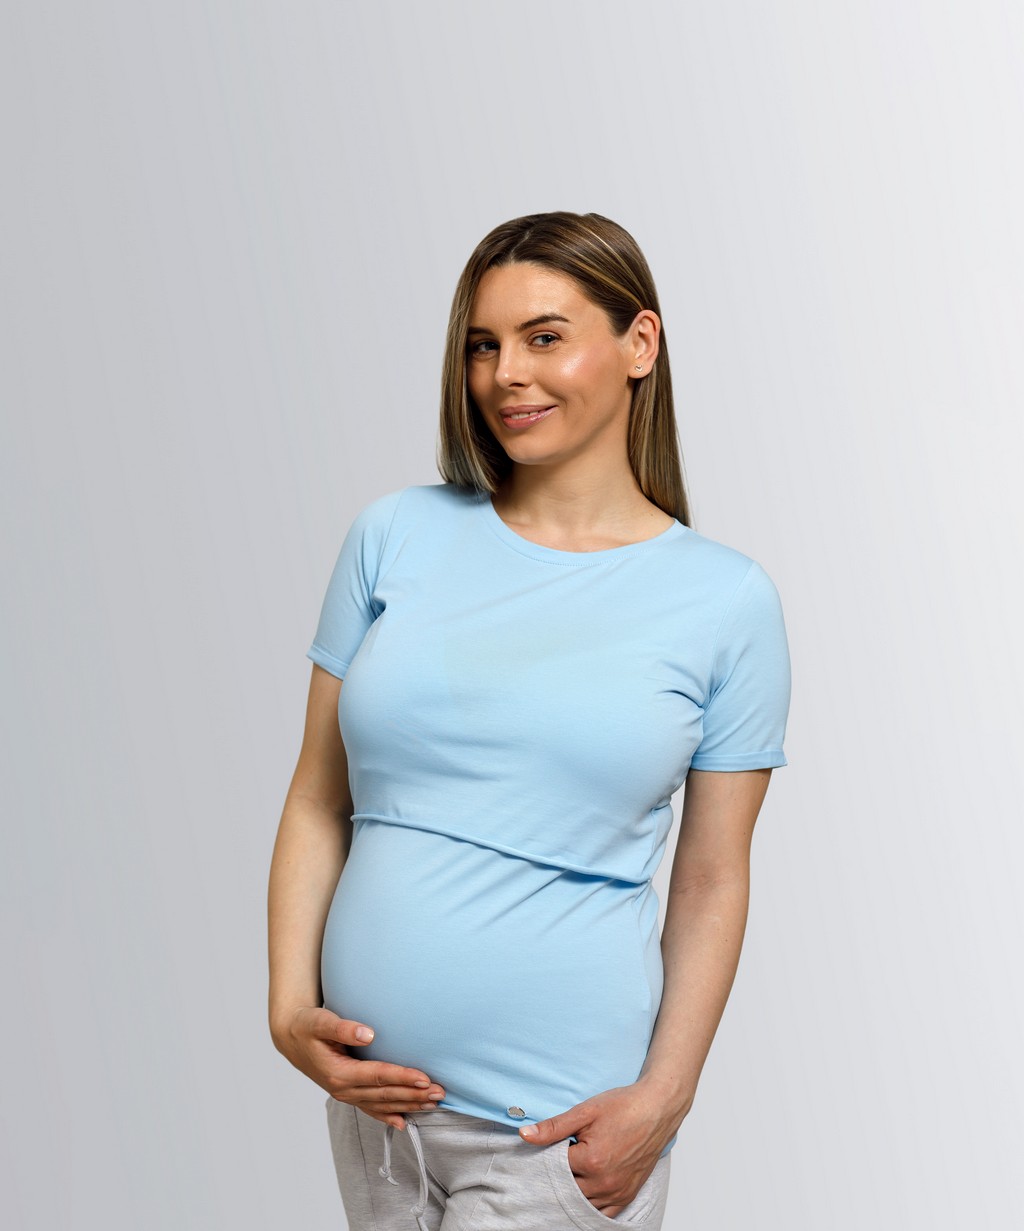 Футболка для беременных женская Tibba Clothes T-011 голубая M